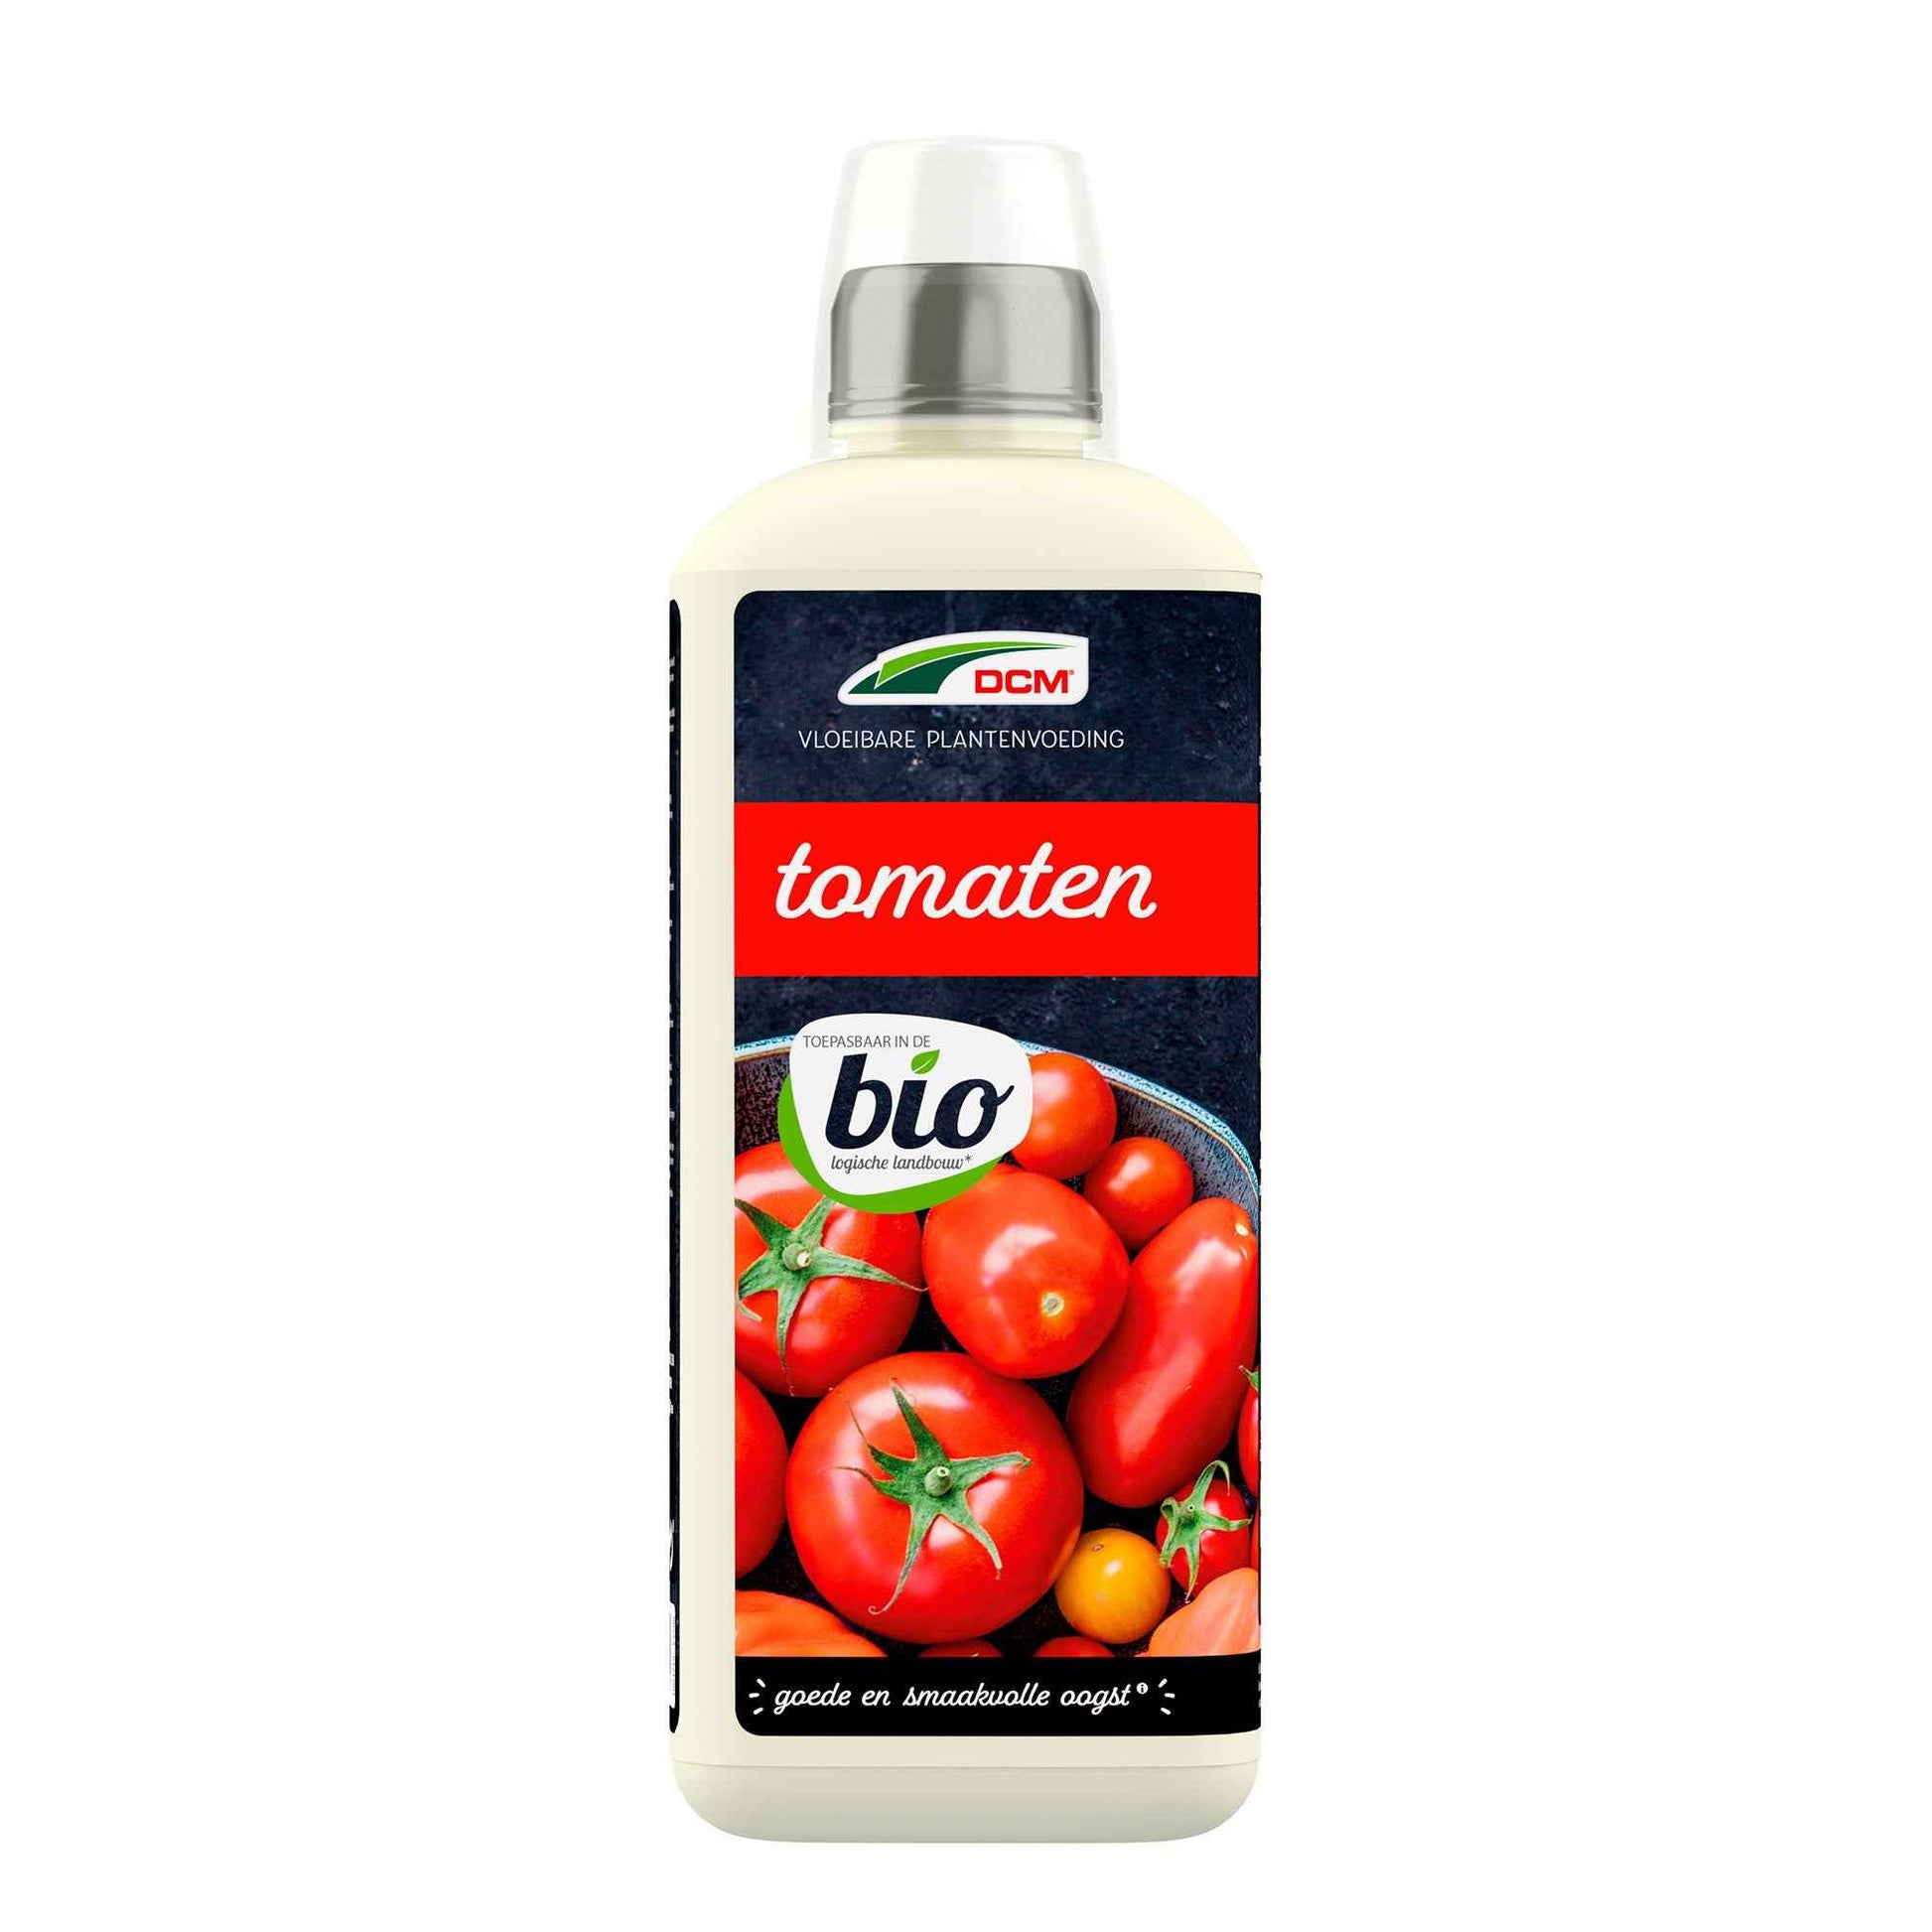 Flüssige Pflanzennahrung für Tomaten - Biologisch 0,8 Liter - DCM - Biologische Pflanzennahrung